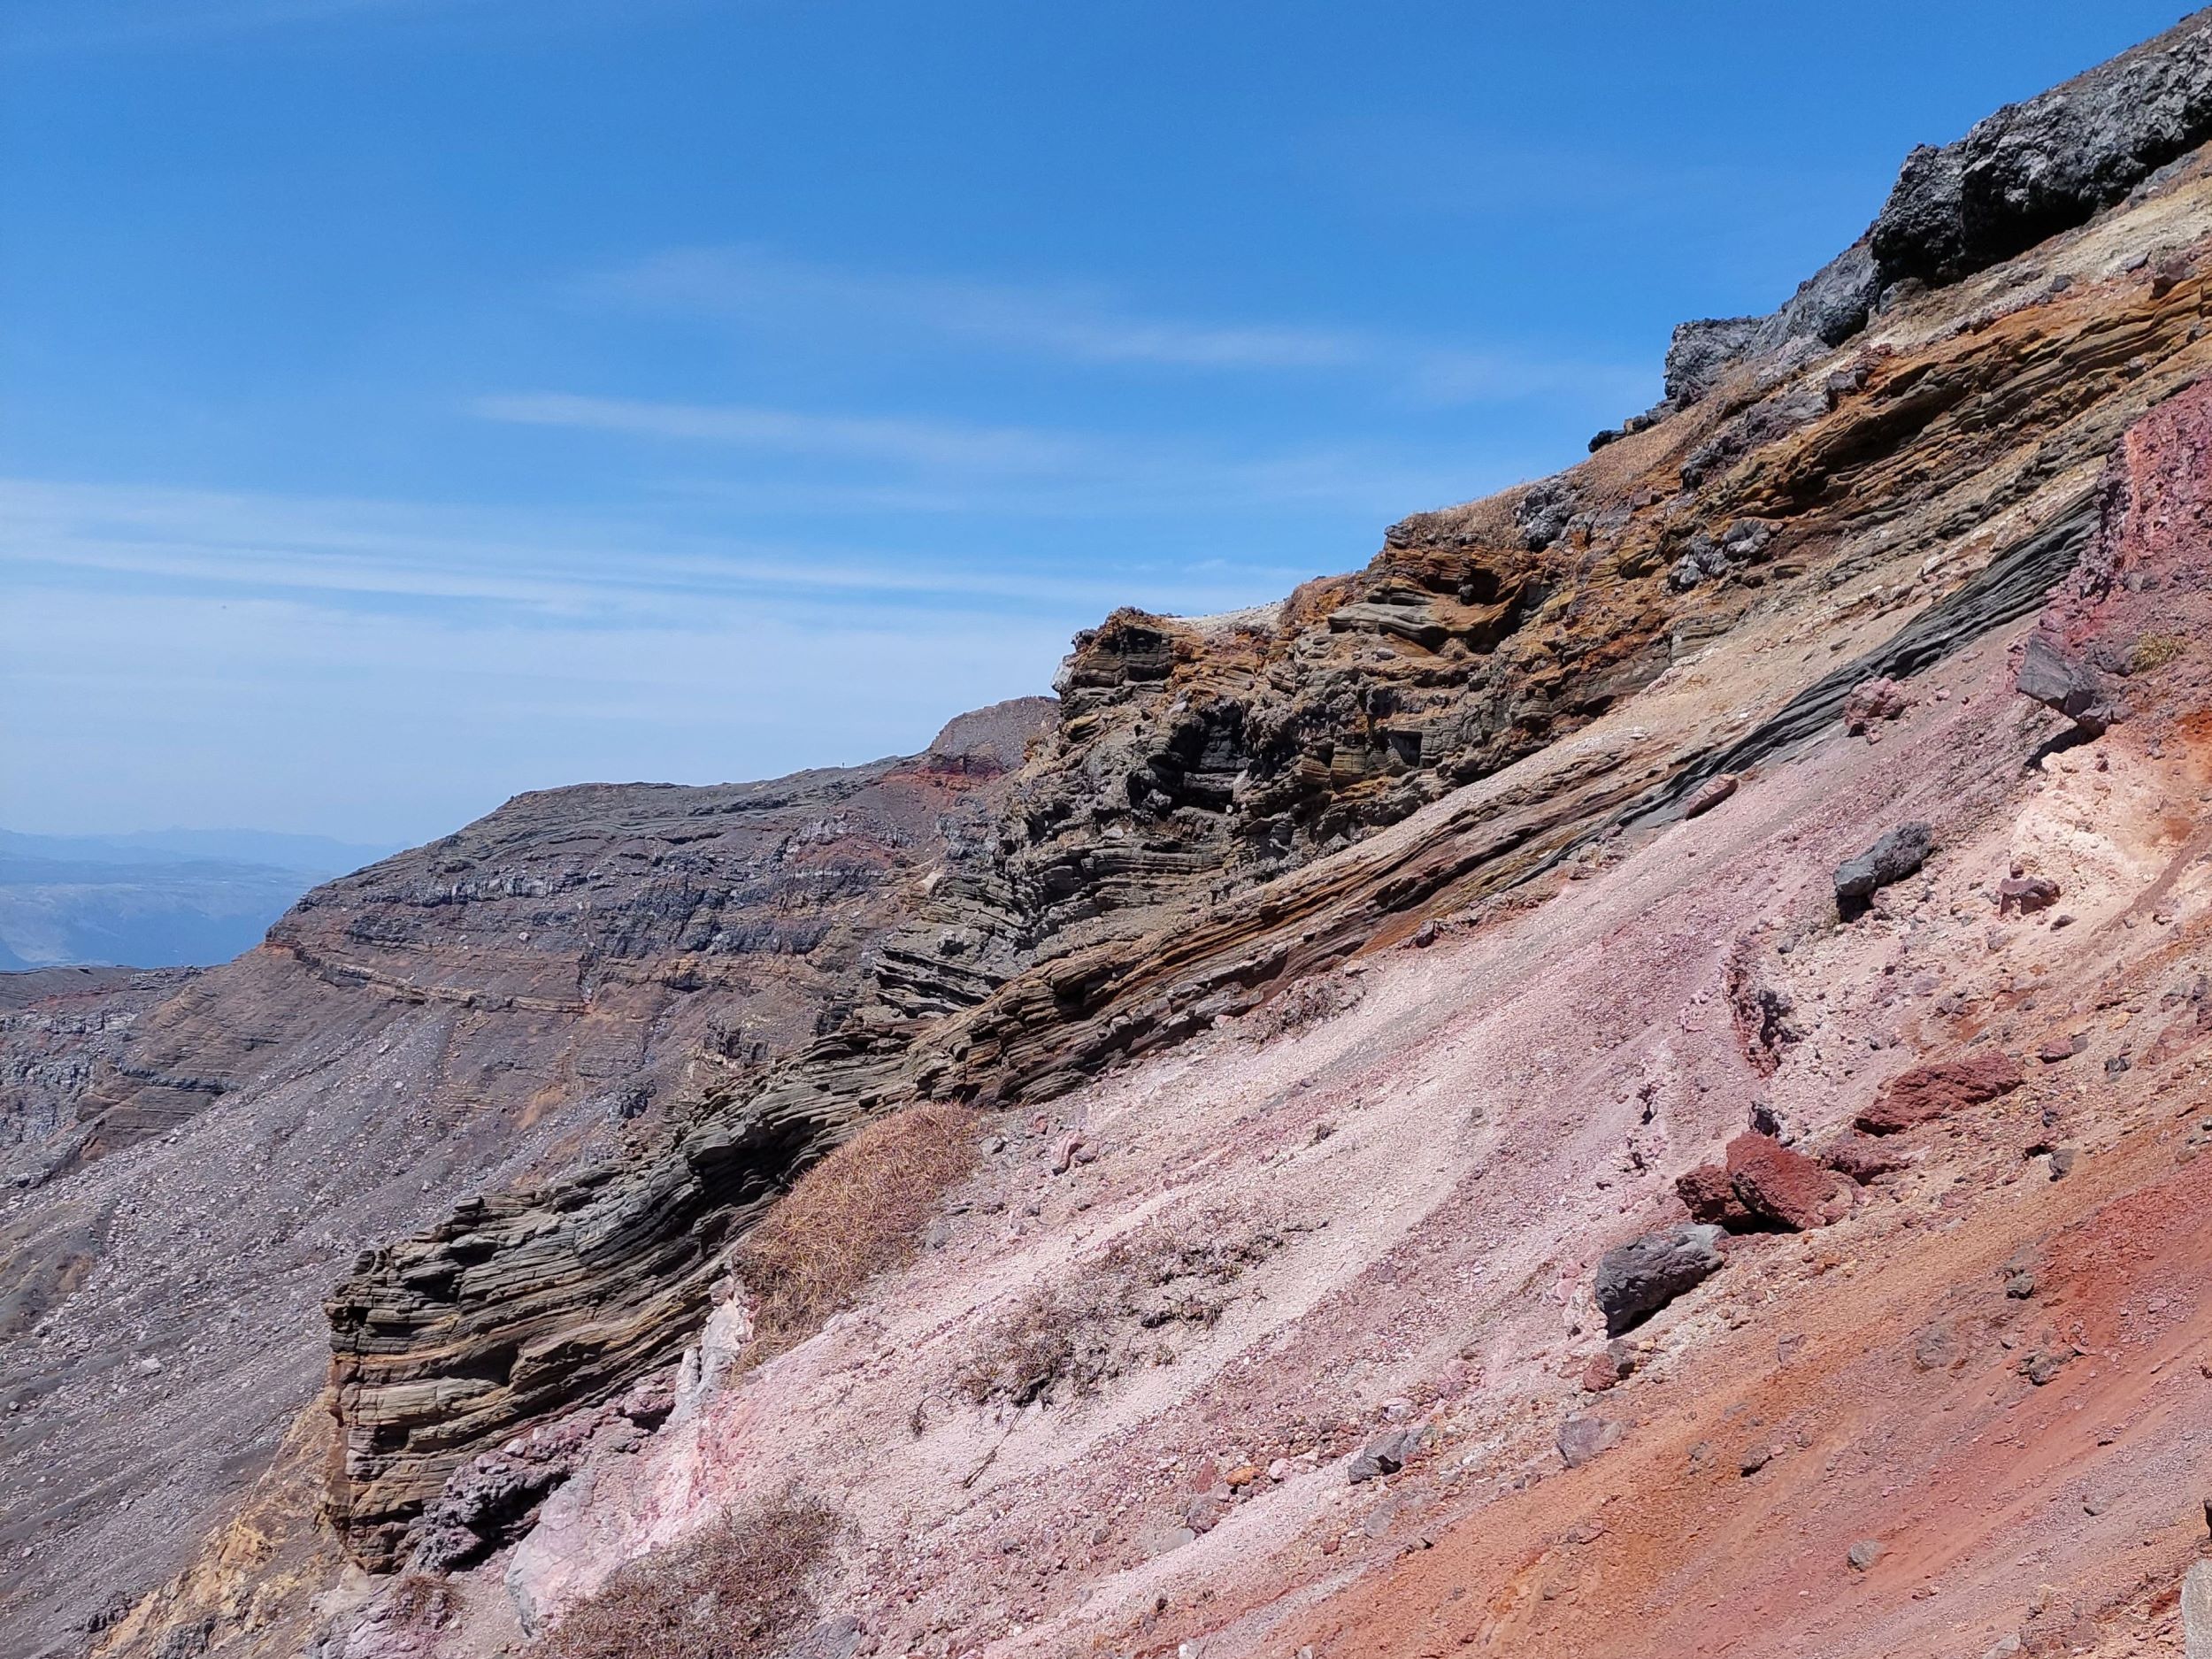 Vörös sziklák az Aszó-hegyen.